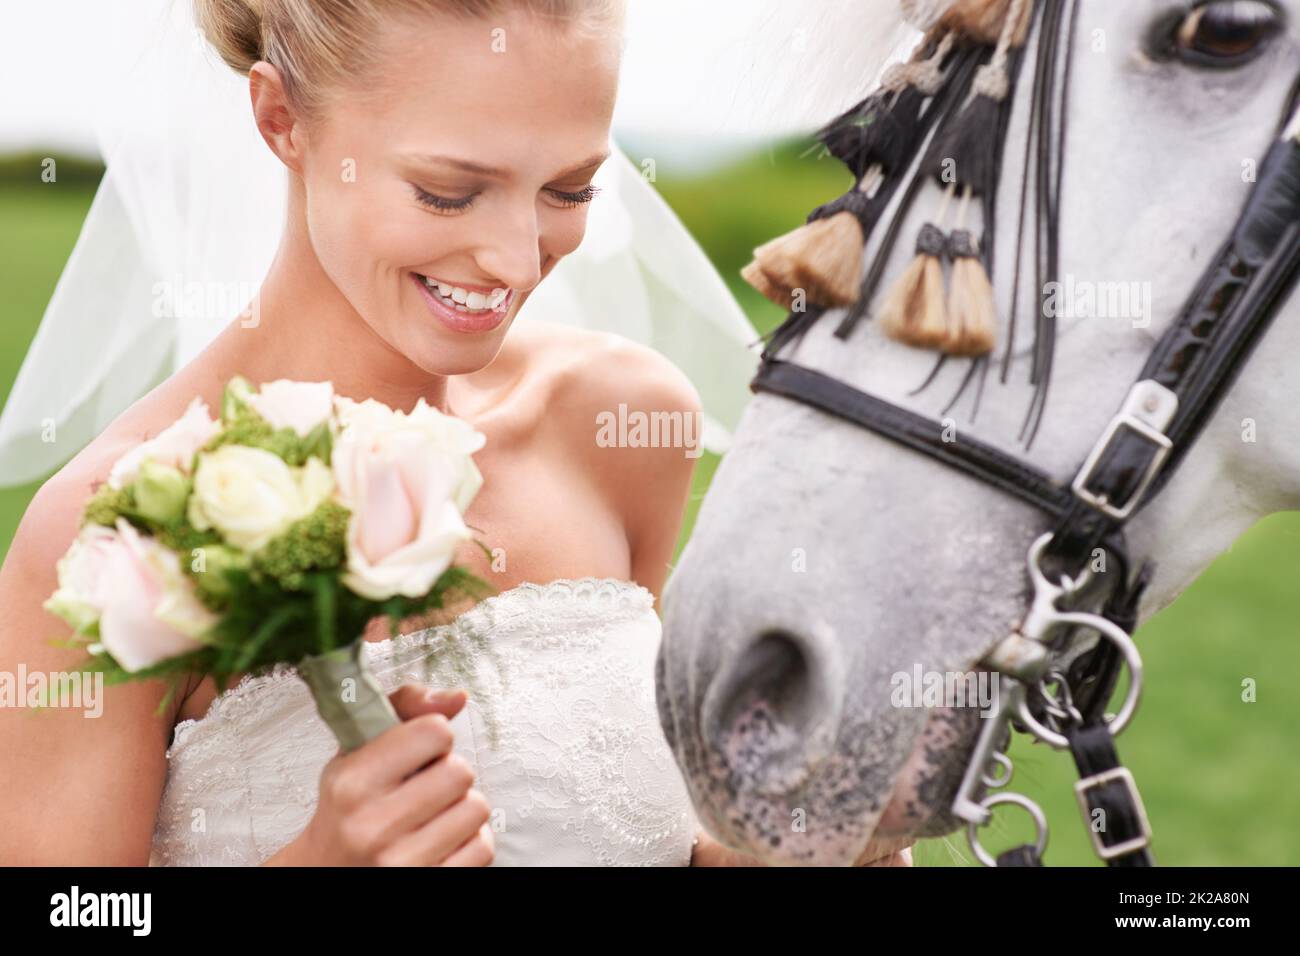 Sie kam zu ihrer Hochzeit auf dem Pferderücken. Eine attraktive junge Braut draußen mit ihrem Pferd. Stockfoto